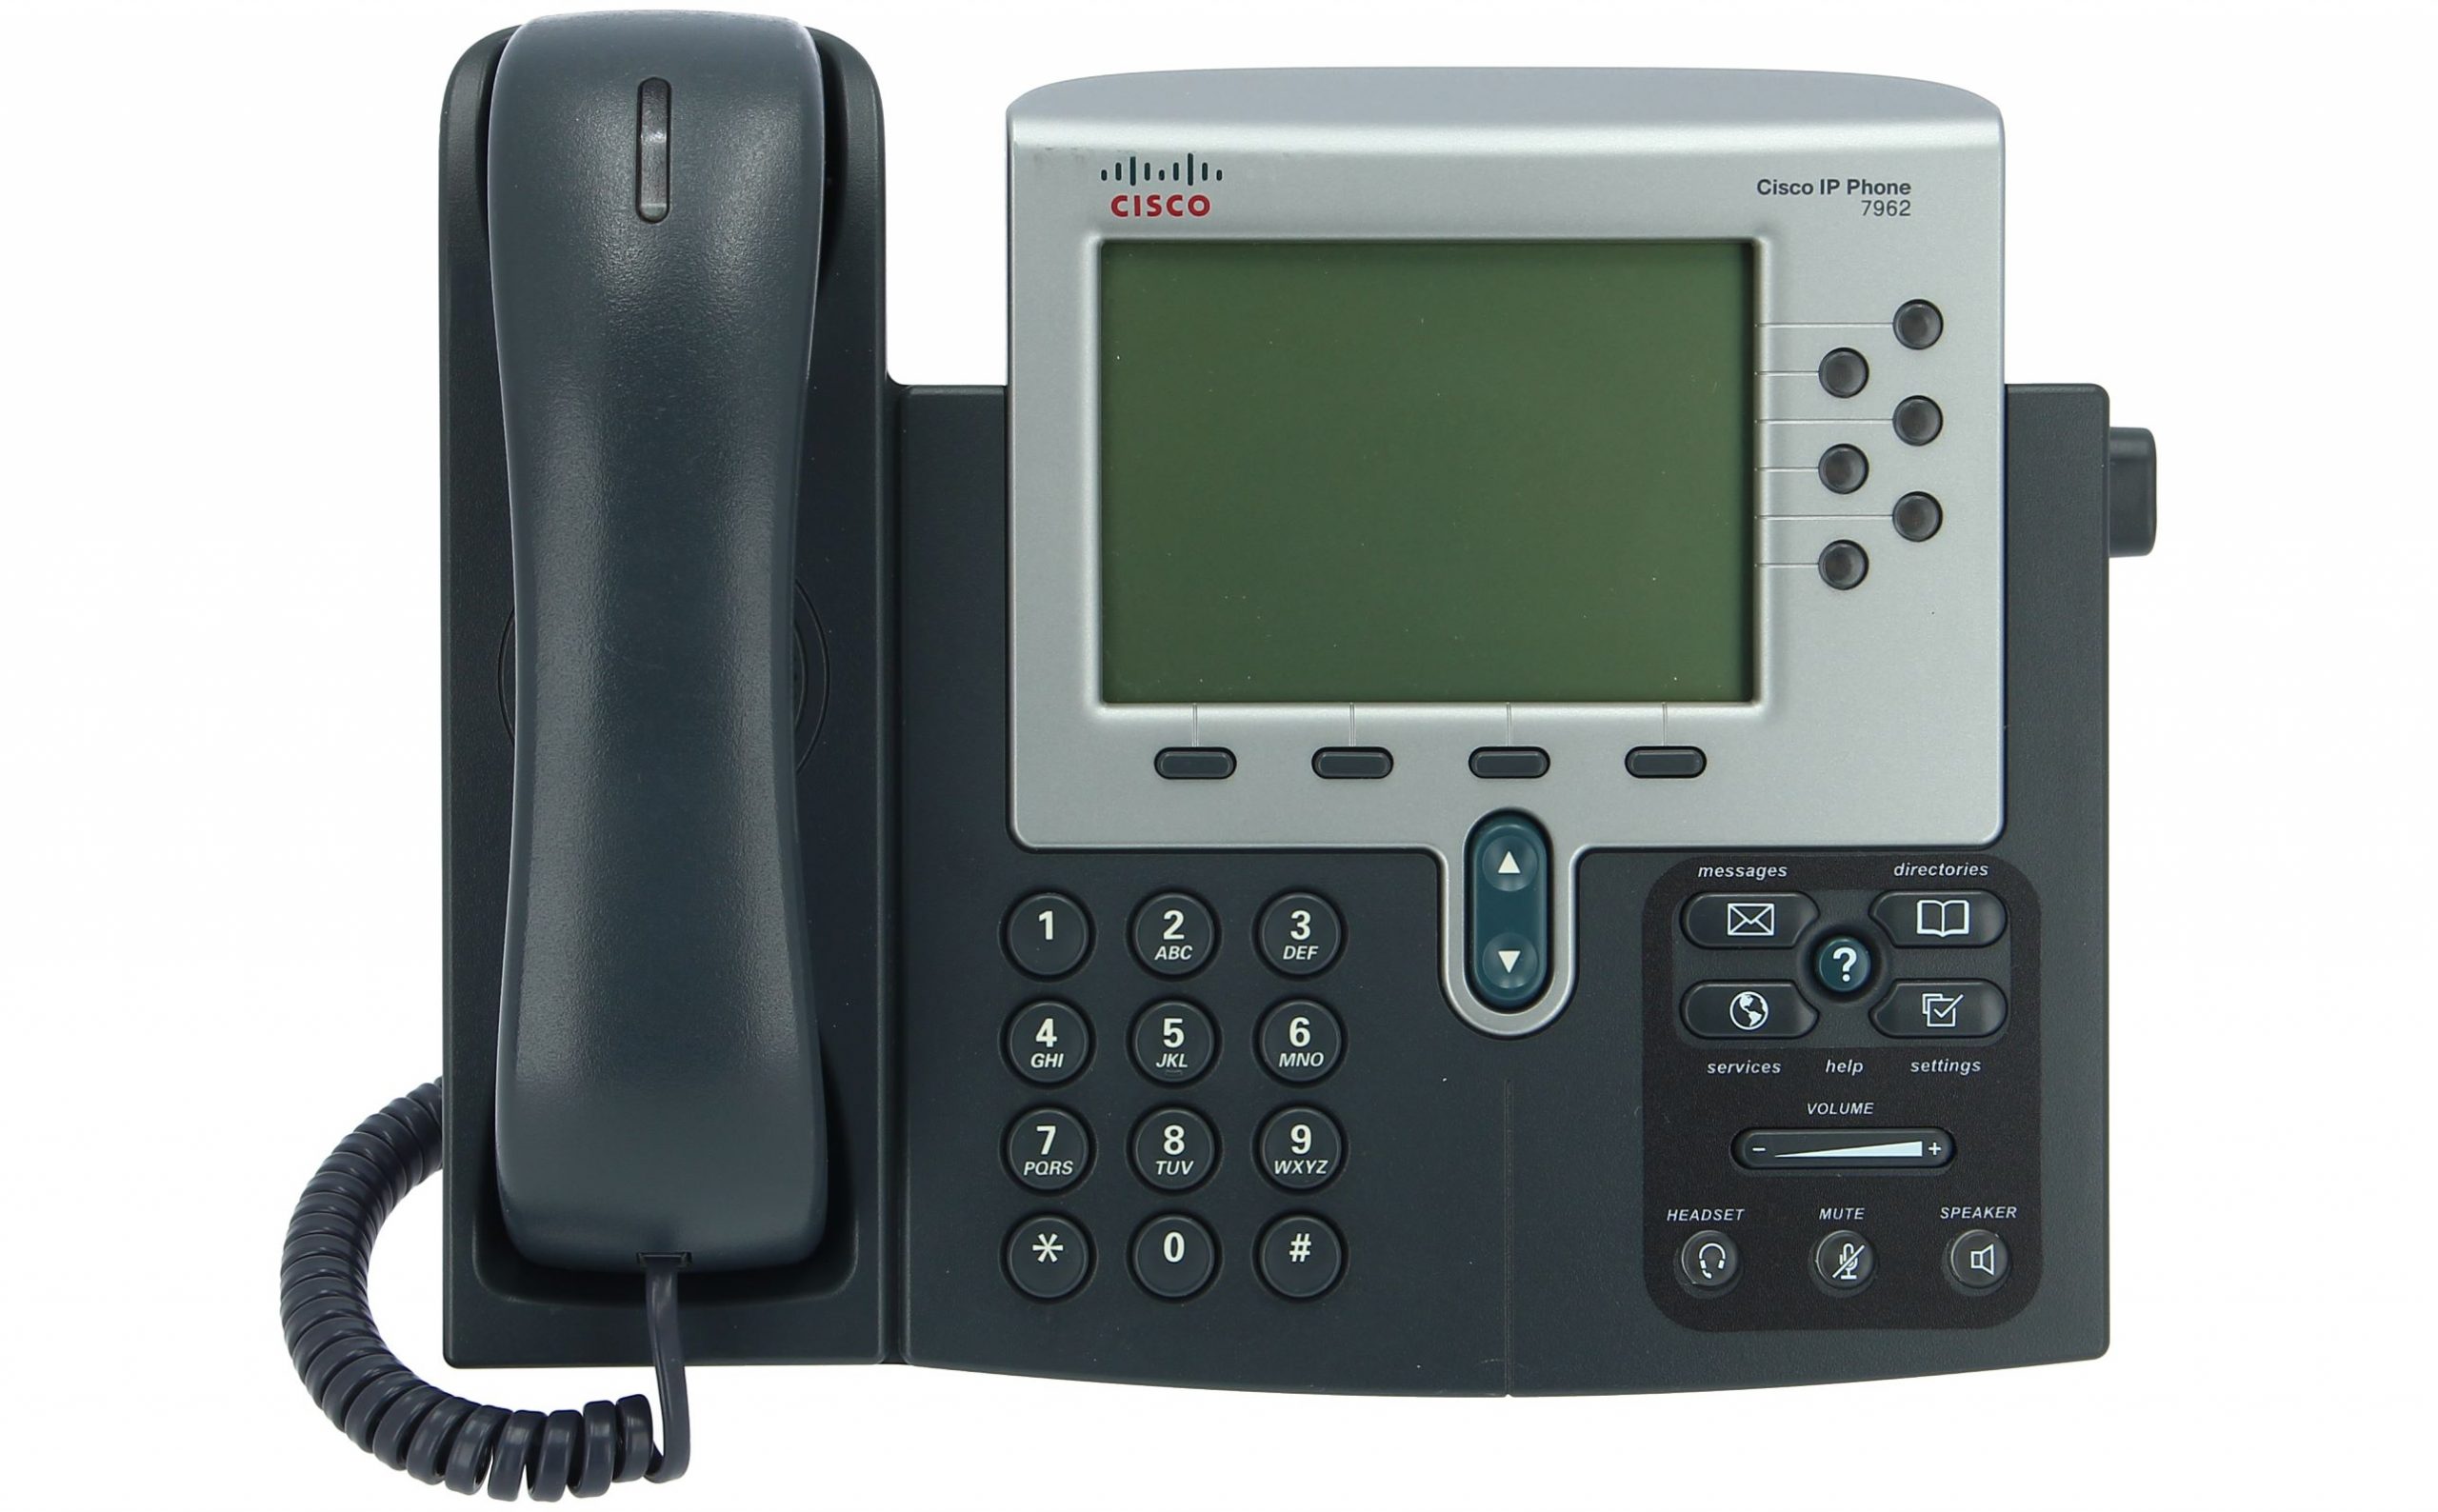 گوشی آی پی فون سیسکو CP-7962G - Unified IP Phone Cisco CP-7962G - شبکه کالا